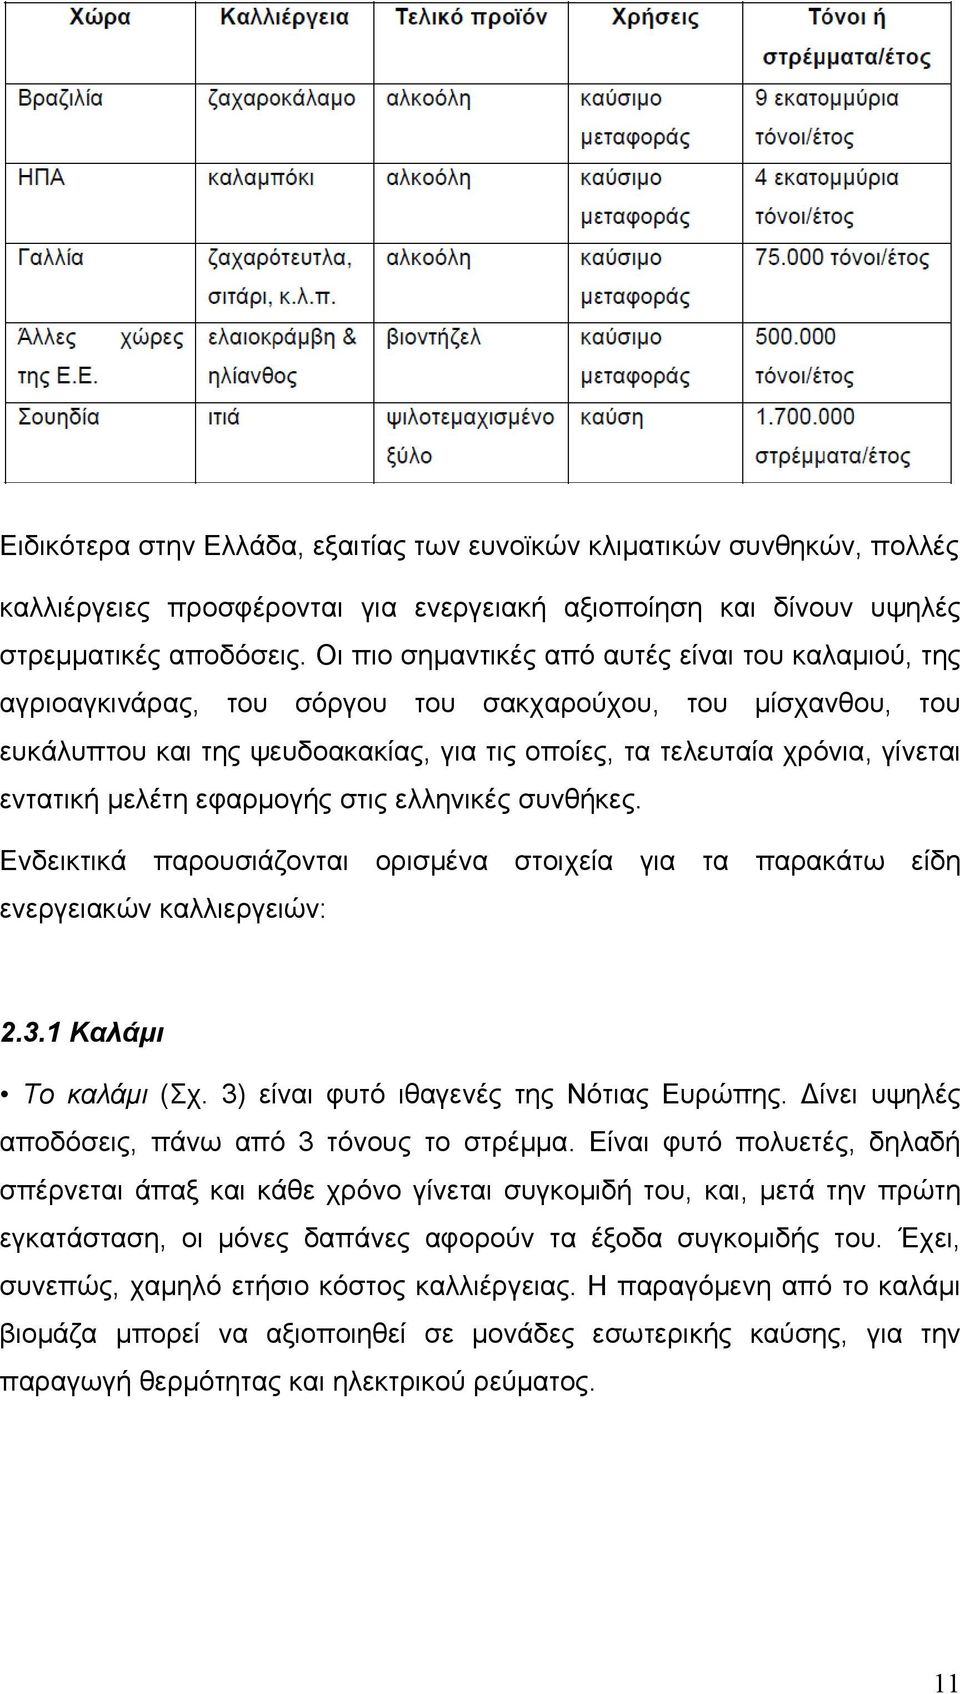 εντατική μελέτη εφαρμογής στις ελληνικές συνθήκες. Ενδεικτικά παρουσιάζονται ορισμένα στοιχεία για τα παρακάτω είδη ενεργειακών καλλιεργειών: 2.3.1 Καλάμι Το καλάμι (Σχ.